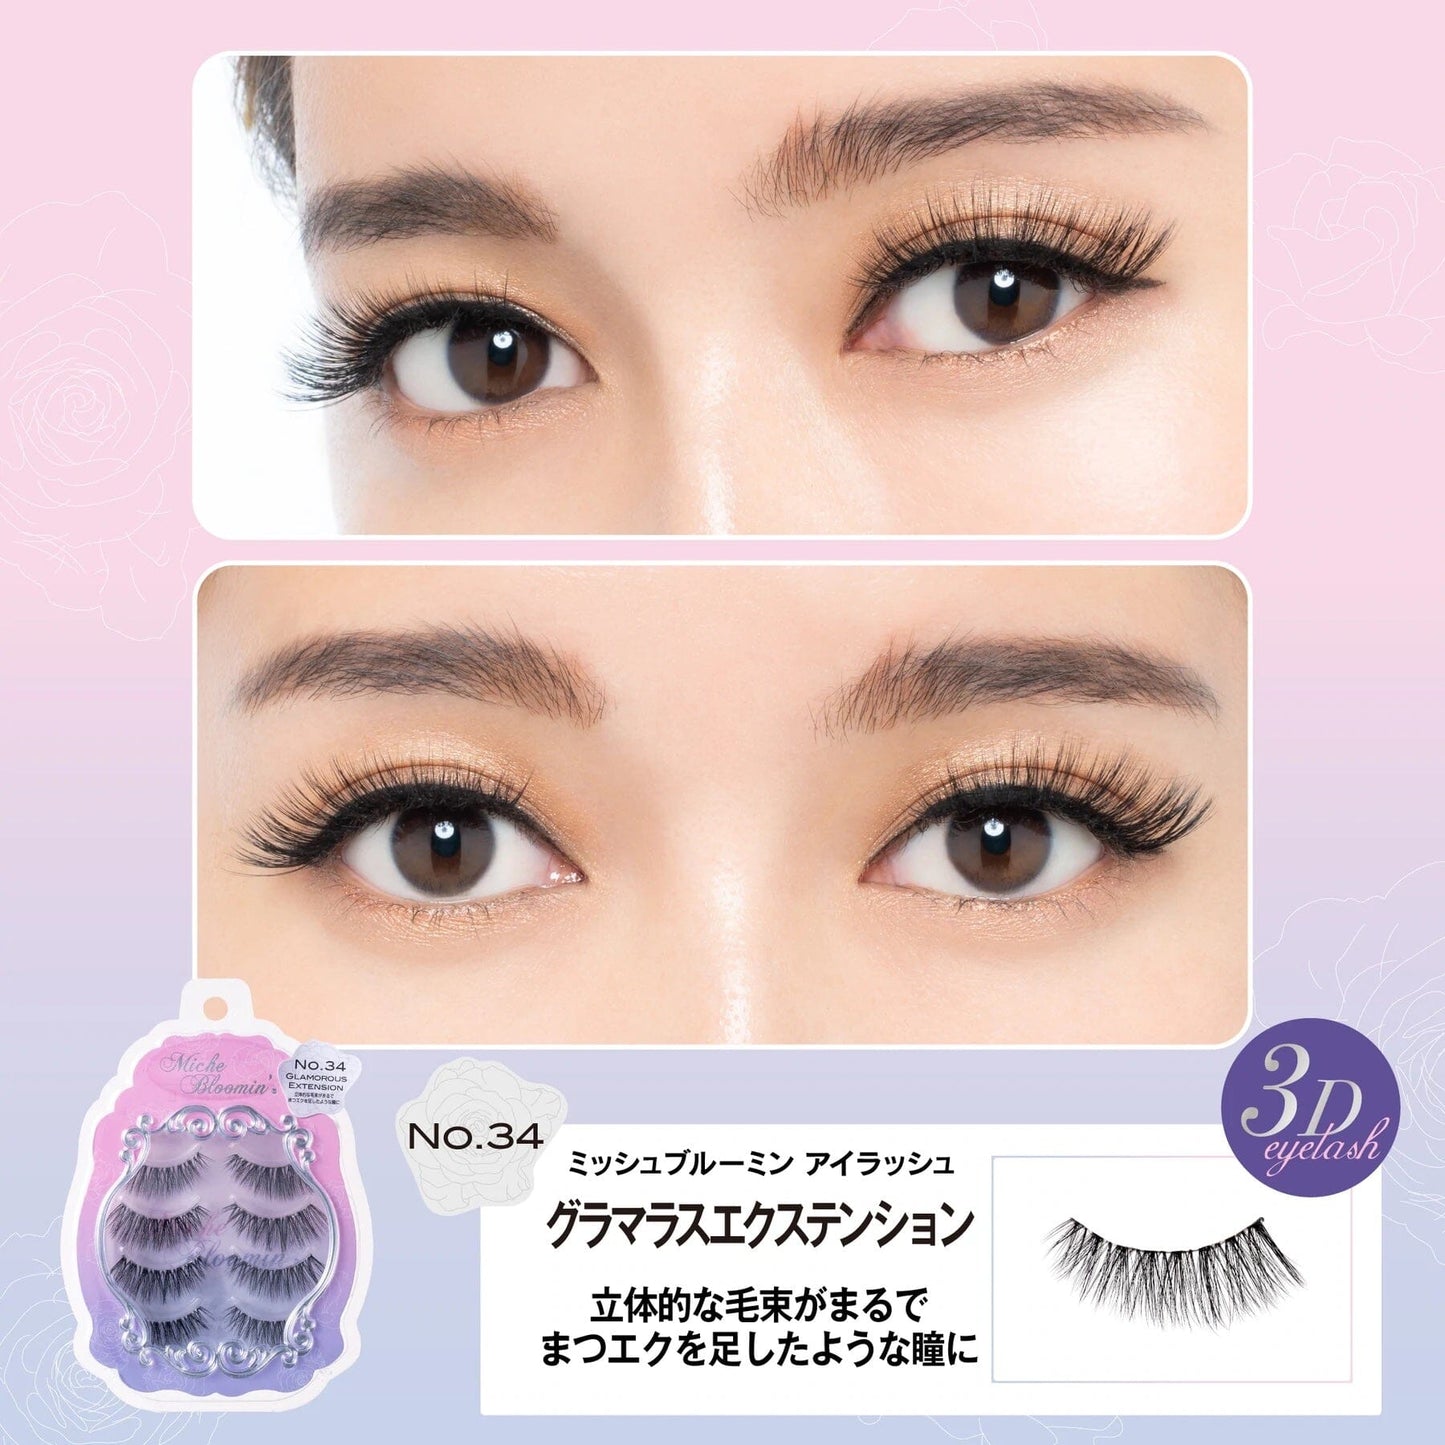 Miche Bloomin’ False Eyelashes Renewal 3D Eyelash 34 Glamorous Extention